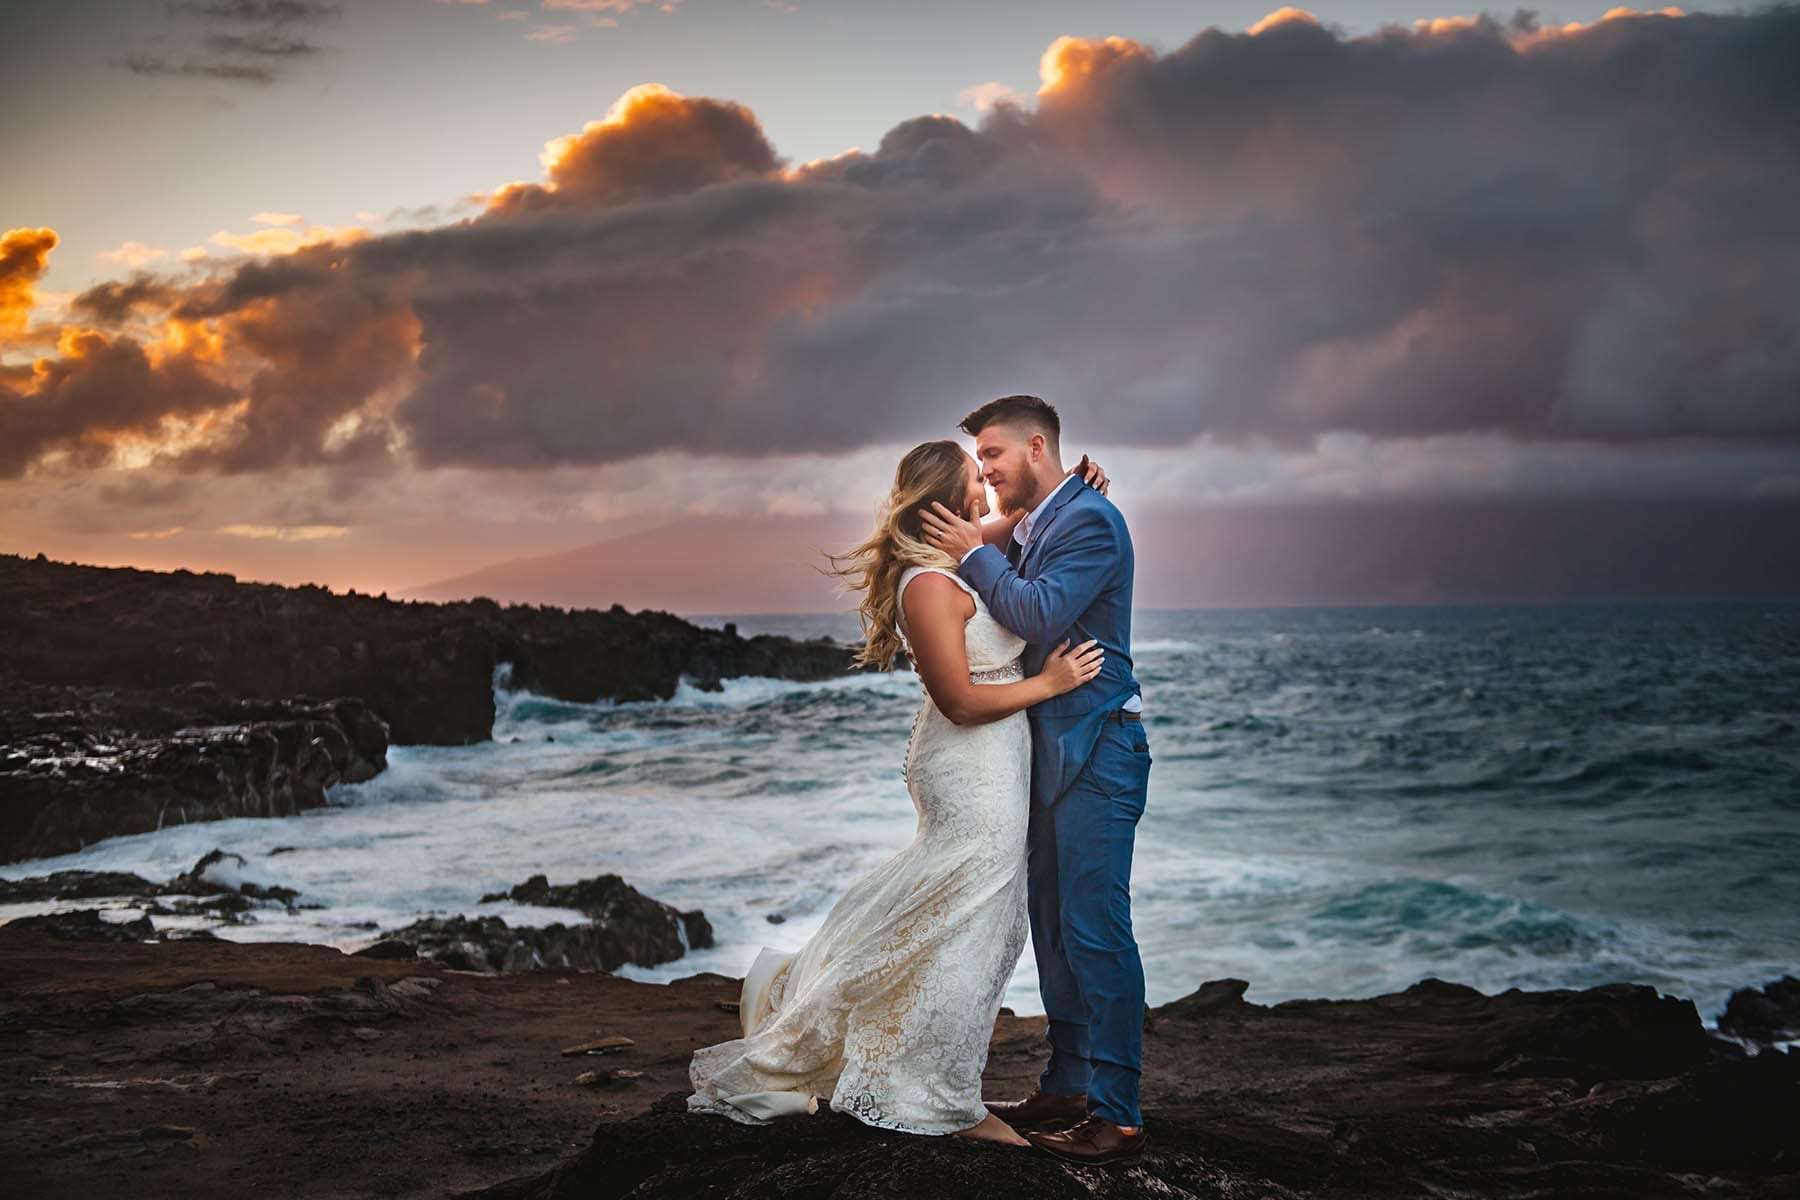 Hawaii beach wedding photos at sunset